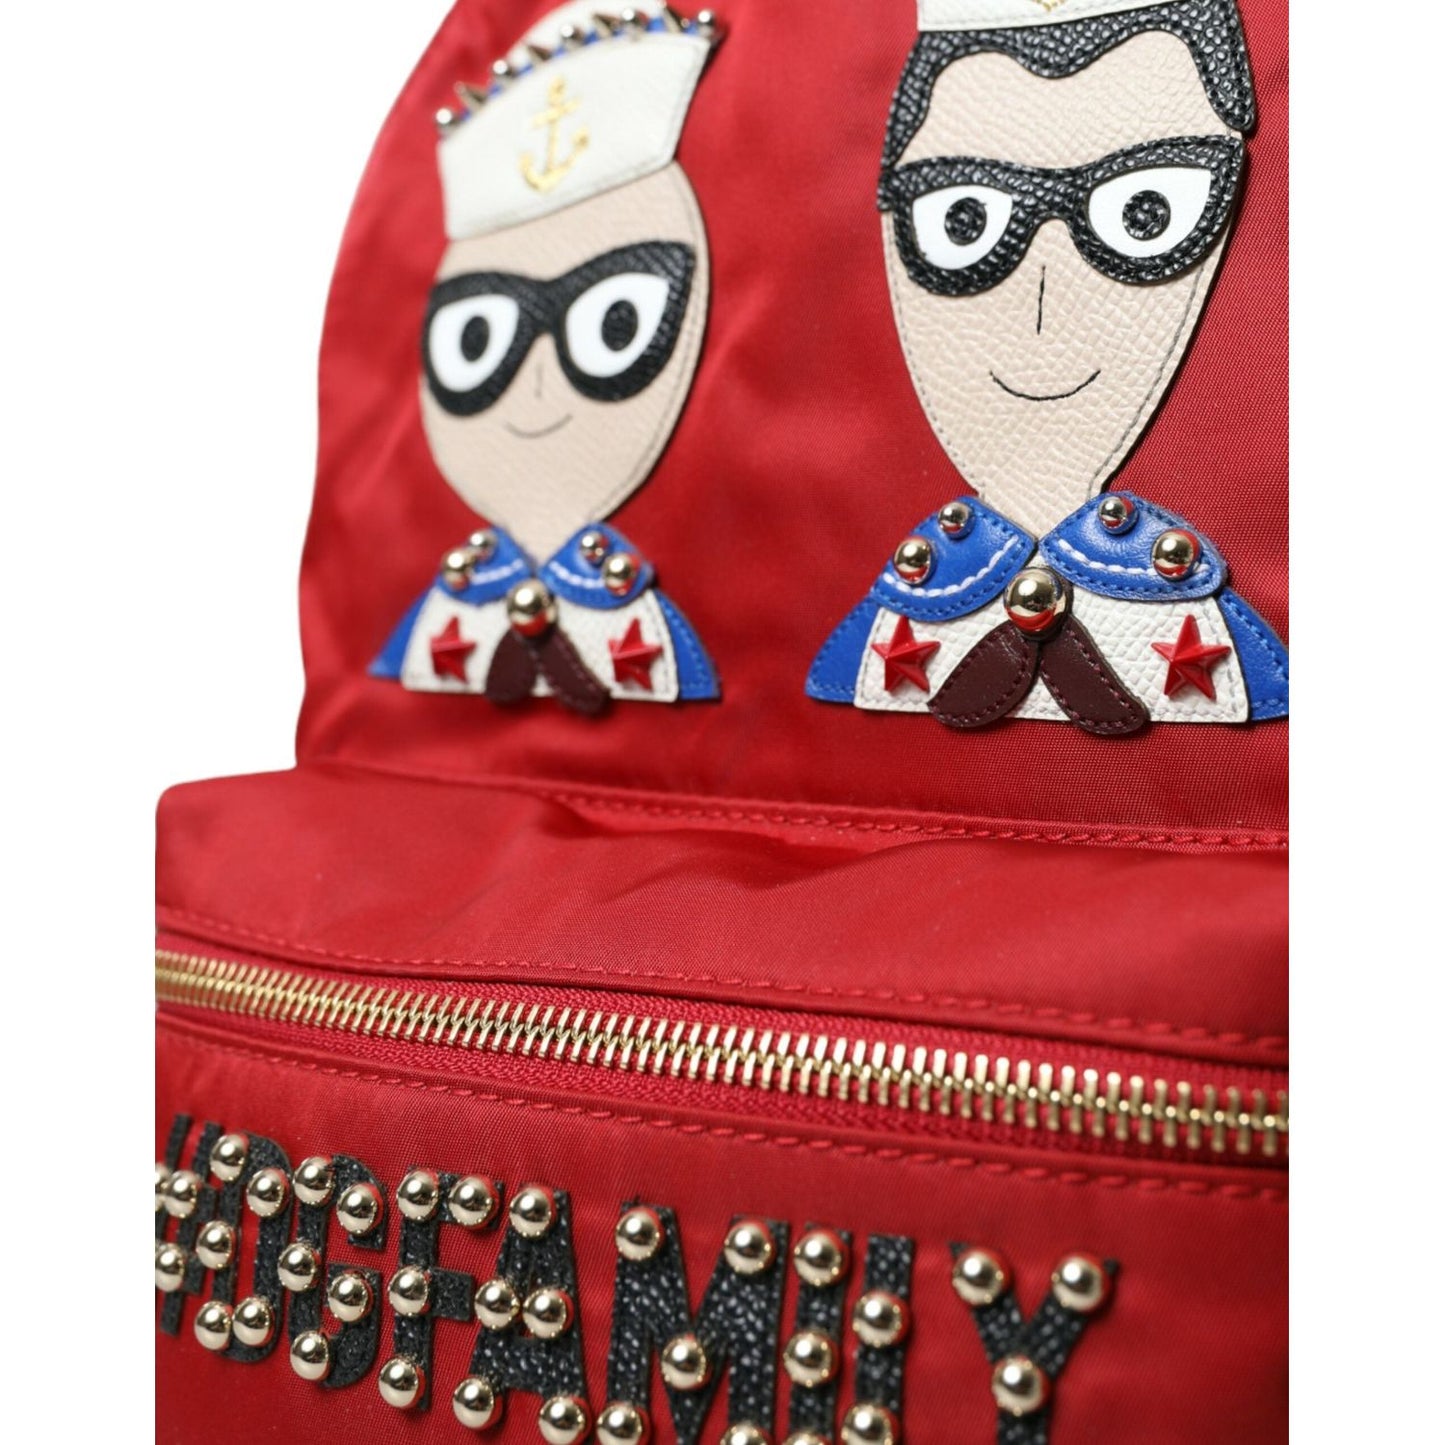 Dolce & Gabbana | Embellished Red Backpack with Gold Detailing| McRichard Designer Brands   